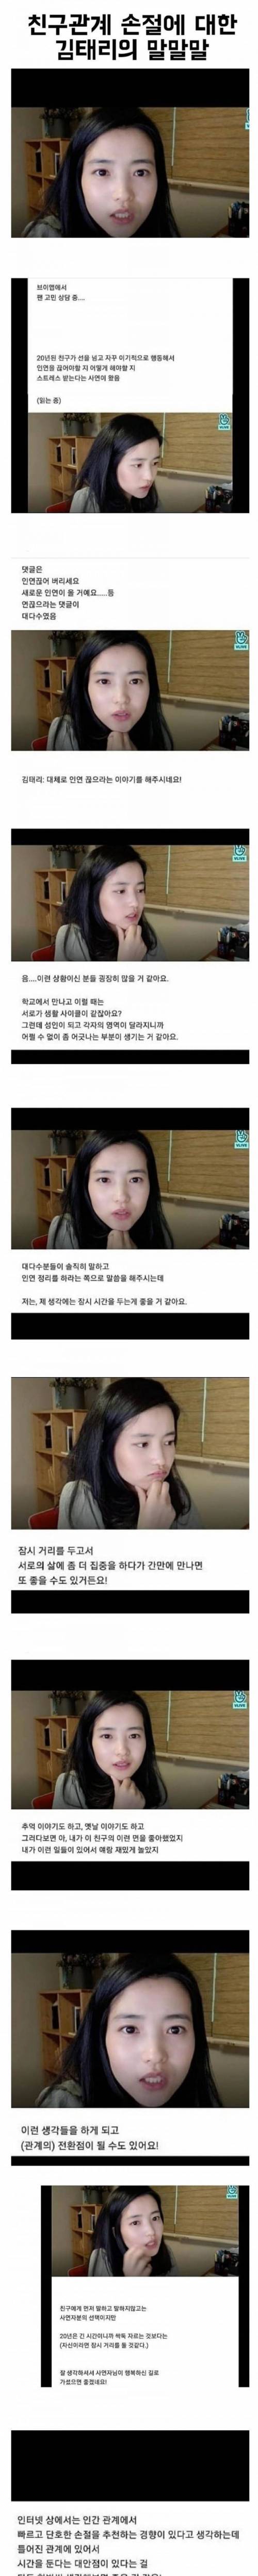 [스압] 친구관계 손절에 대한 배우 김태리의 말말말